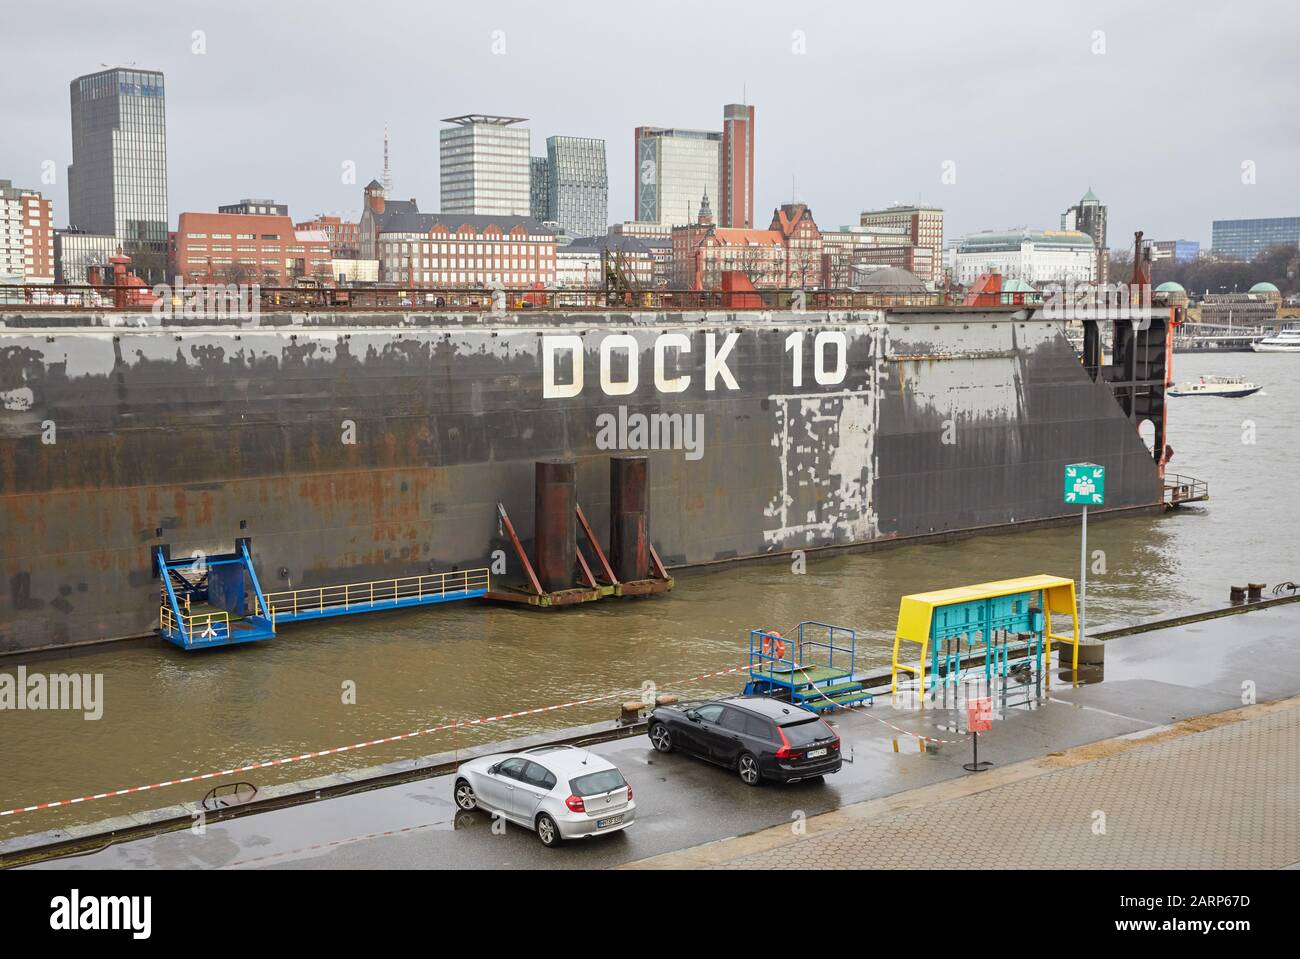 29 gennaio 2020, Amburgo: La scritta "'Dock 10'' è sul molo dello stesso nome di Blohm+Voss. Sullo sfondo si può vedere la torre Astra e le fasi di atterraggio (r). In occasione di una conferenza stampa, il cantiere navale Lürssen ha presentato il suo progetto architettonico per la copertura del Dock 10 a Blohm+Voss. Foto: Georg Wendt/Dpa Foto Stock